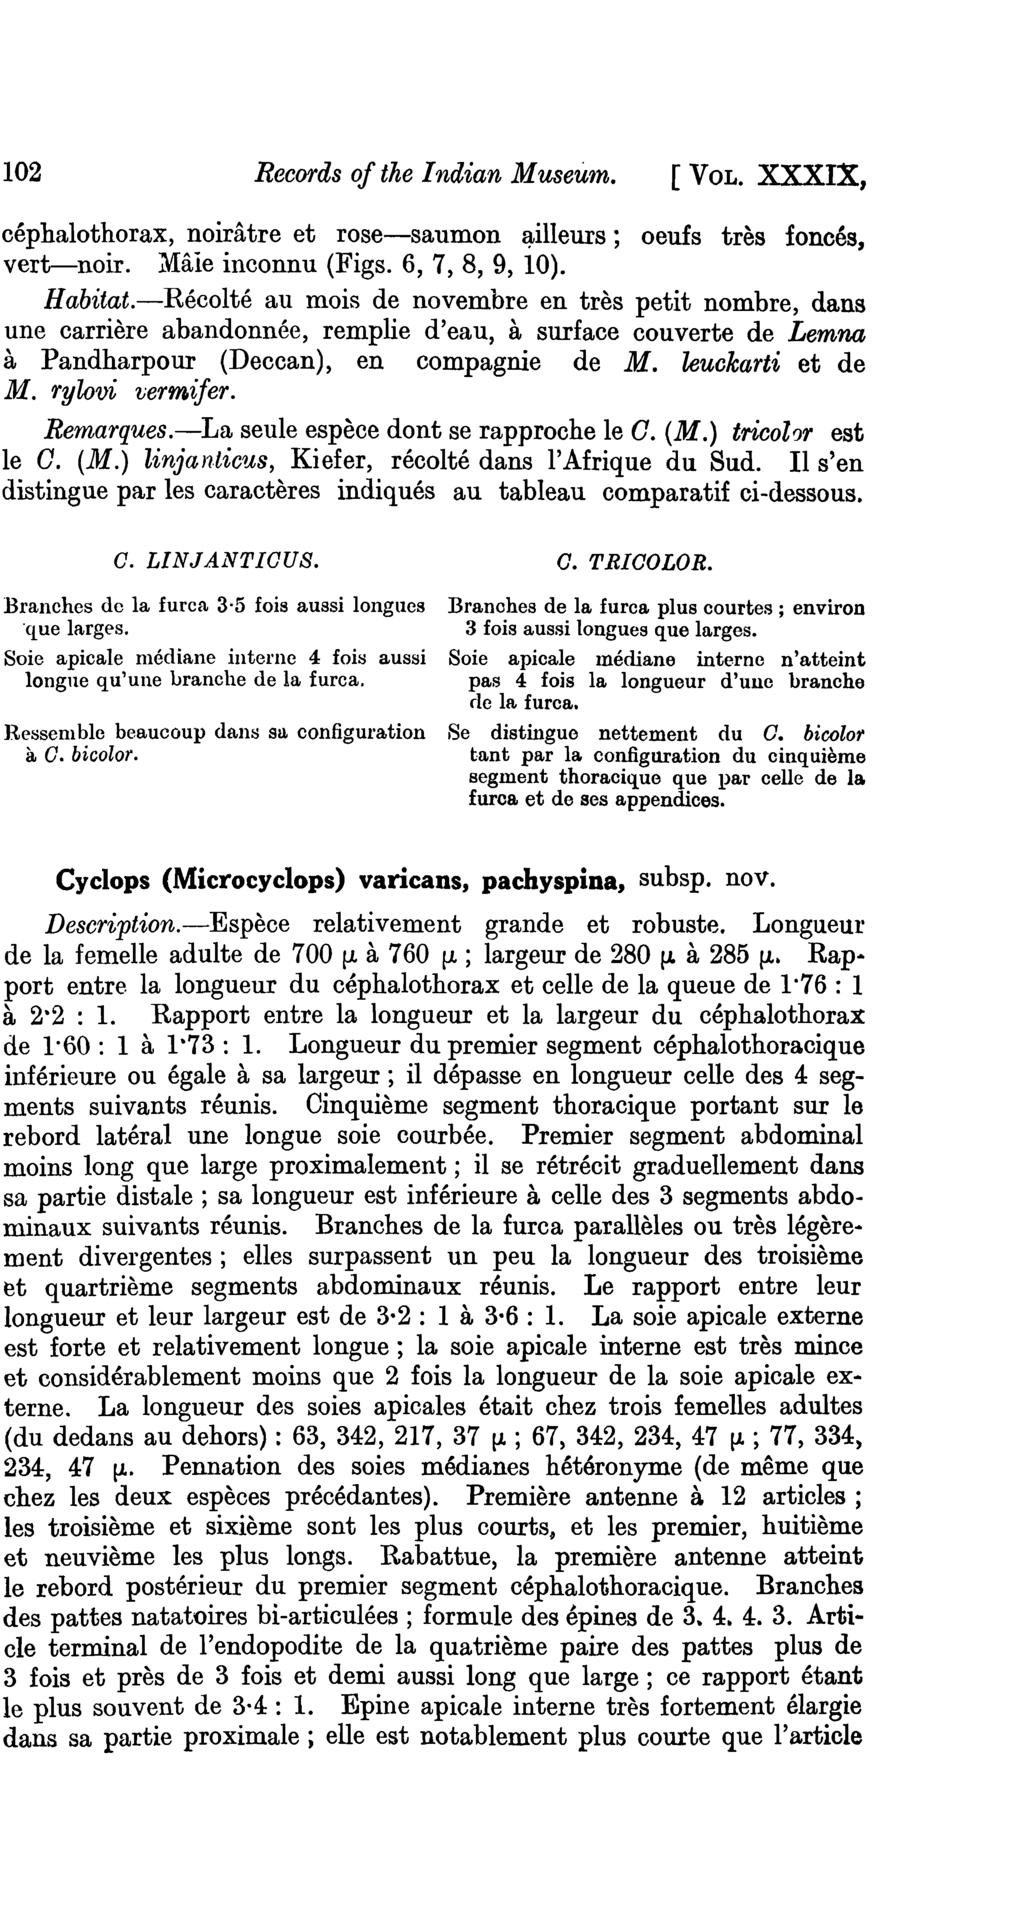 102 Records of the I ndian Museum. [VOL. XXXIX, cephalothorax, noiratre et rose-saumon ~illeurs; oeufs tres fonces, vert-noir. Maie inconnu (Figs. 6, 7, 8, 9, 10). Habitat.